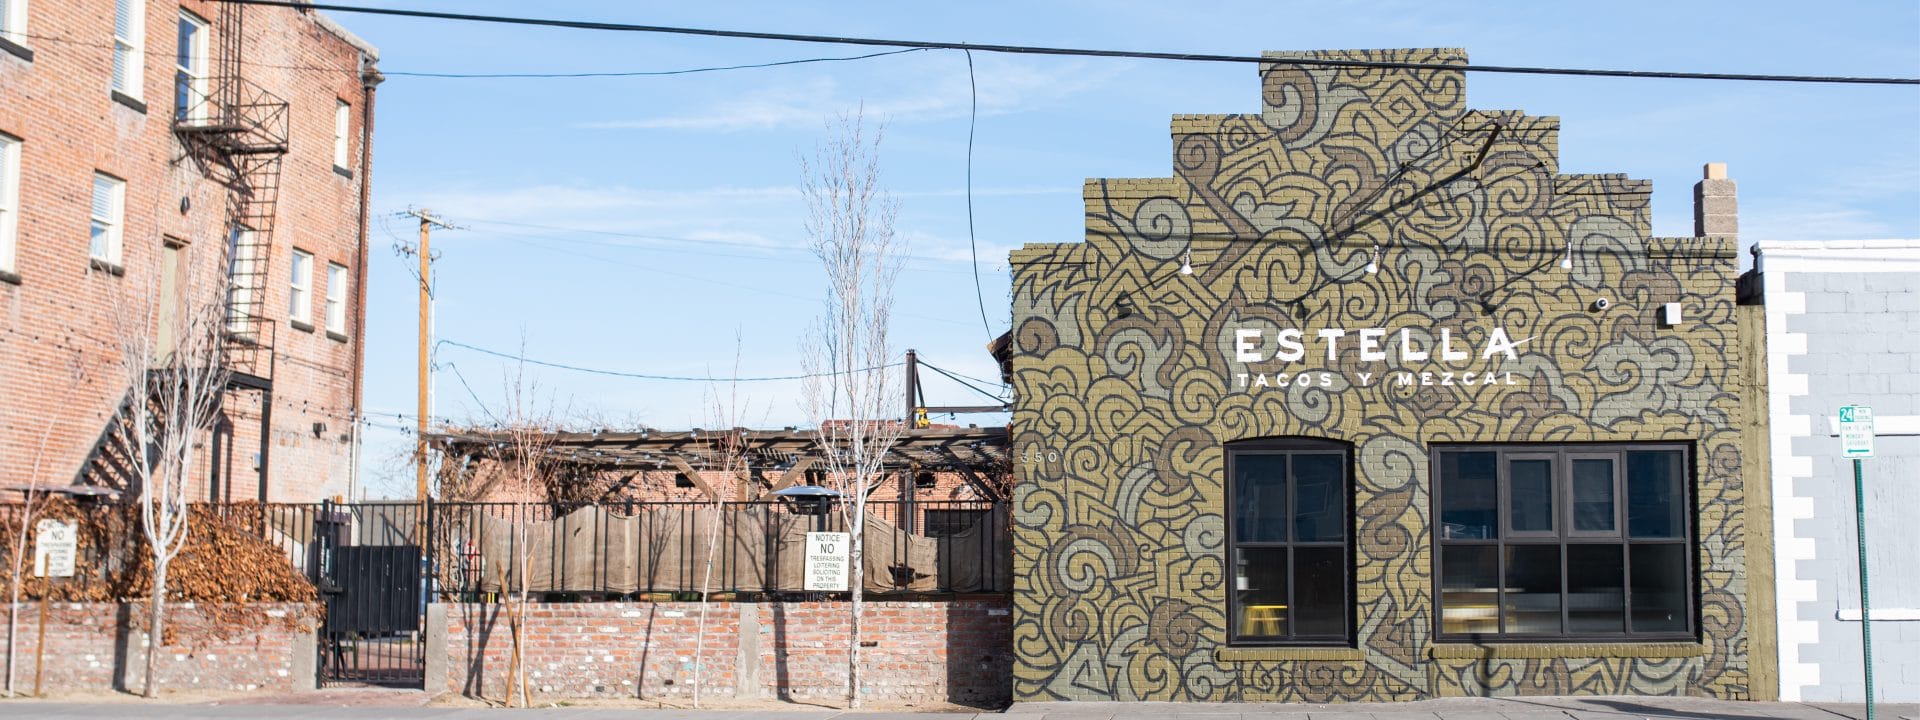 Rushton Smith - Custom Brand Design - Estella Tacos Y Mezcal Restaurant - Brand Mural Street View of Restaurant